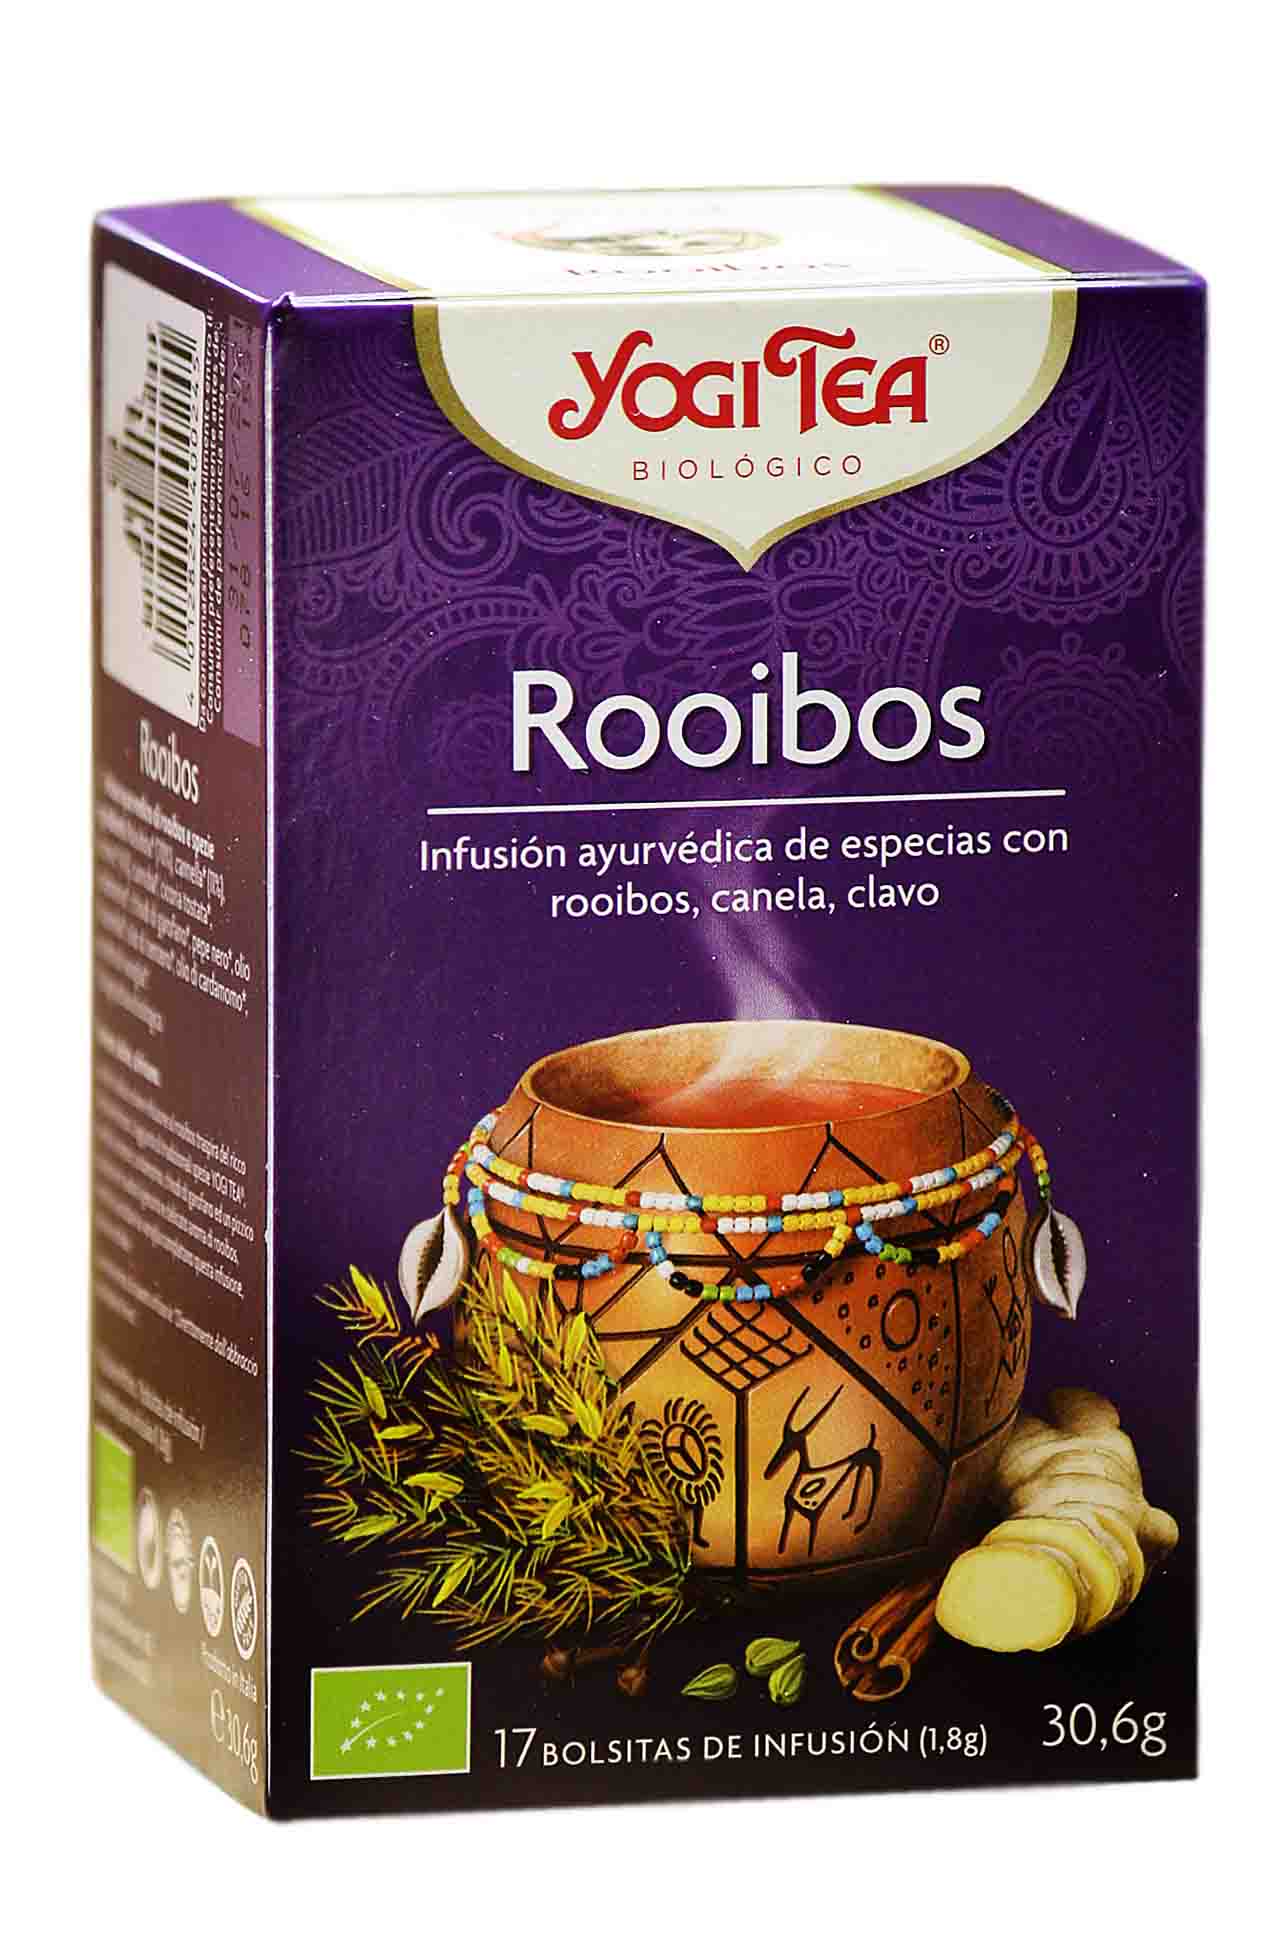 Yogui Tea Roiboos Yogui tea